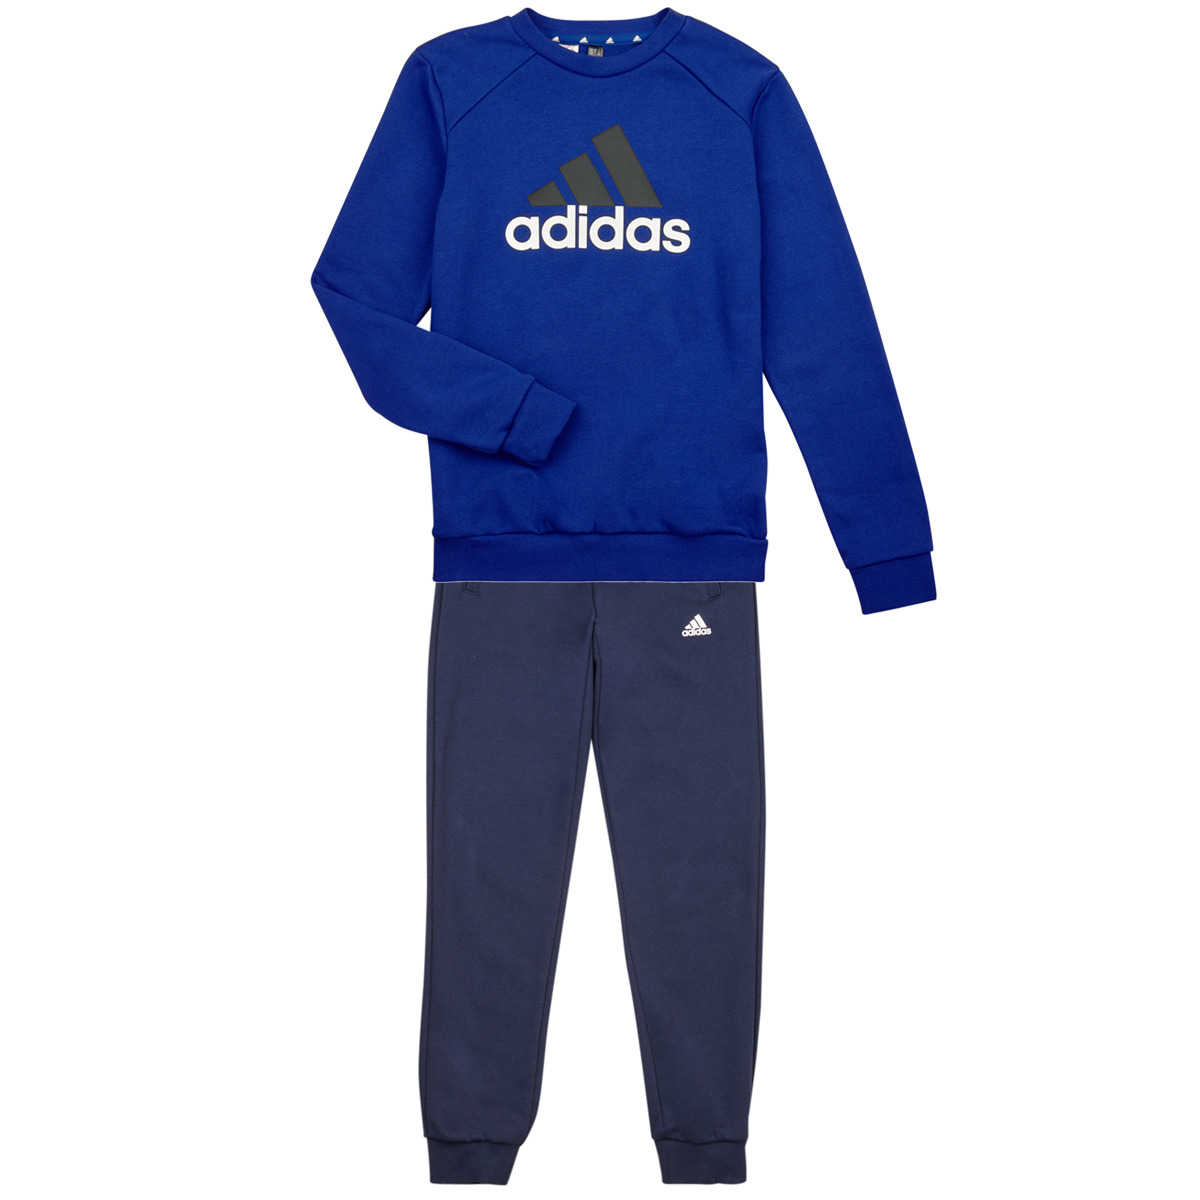 Adidas Sportswear Marine / Blanc BL FL TS znFE50GH